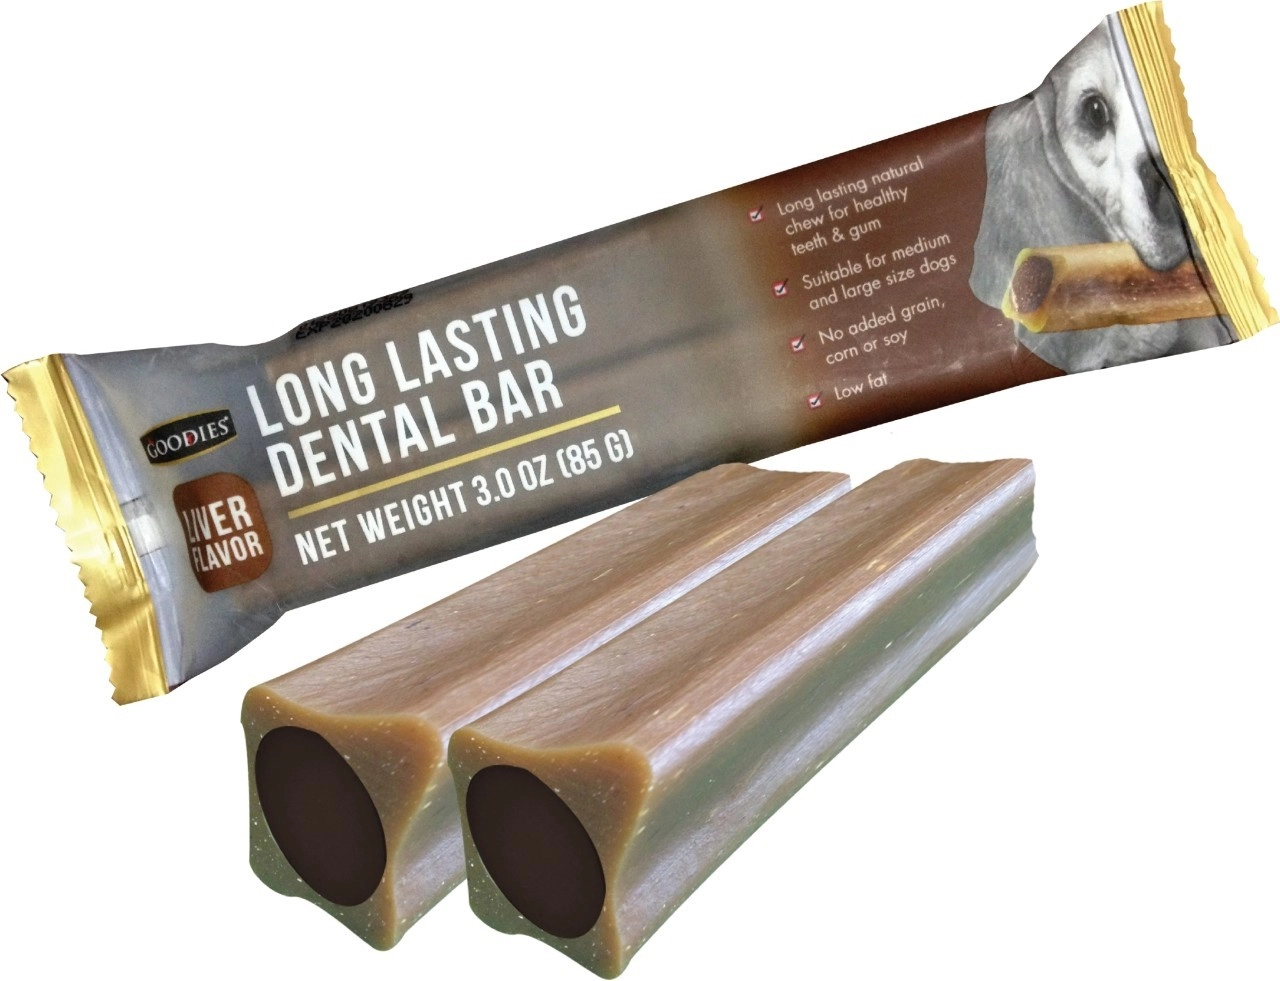 Goodies LONG LASTING DENTAL BAR ขนมขัดฟัน ชนิดสอดไส้ สำหรับสุนัขทุกสายพันธุ์ทุกช่วงวัย